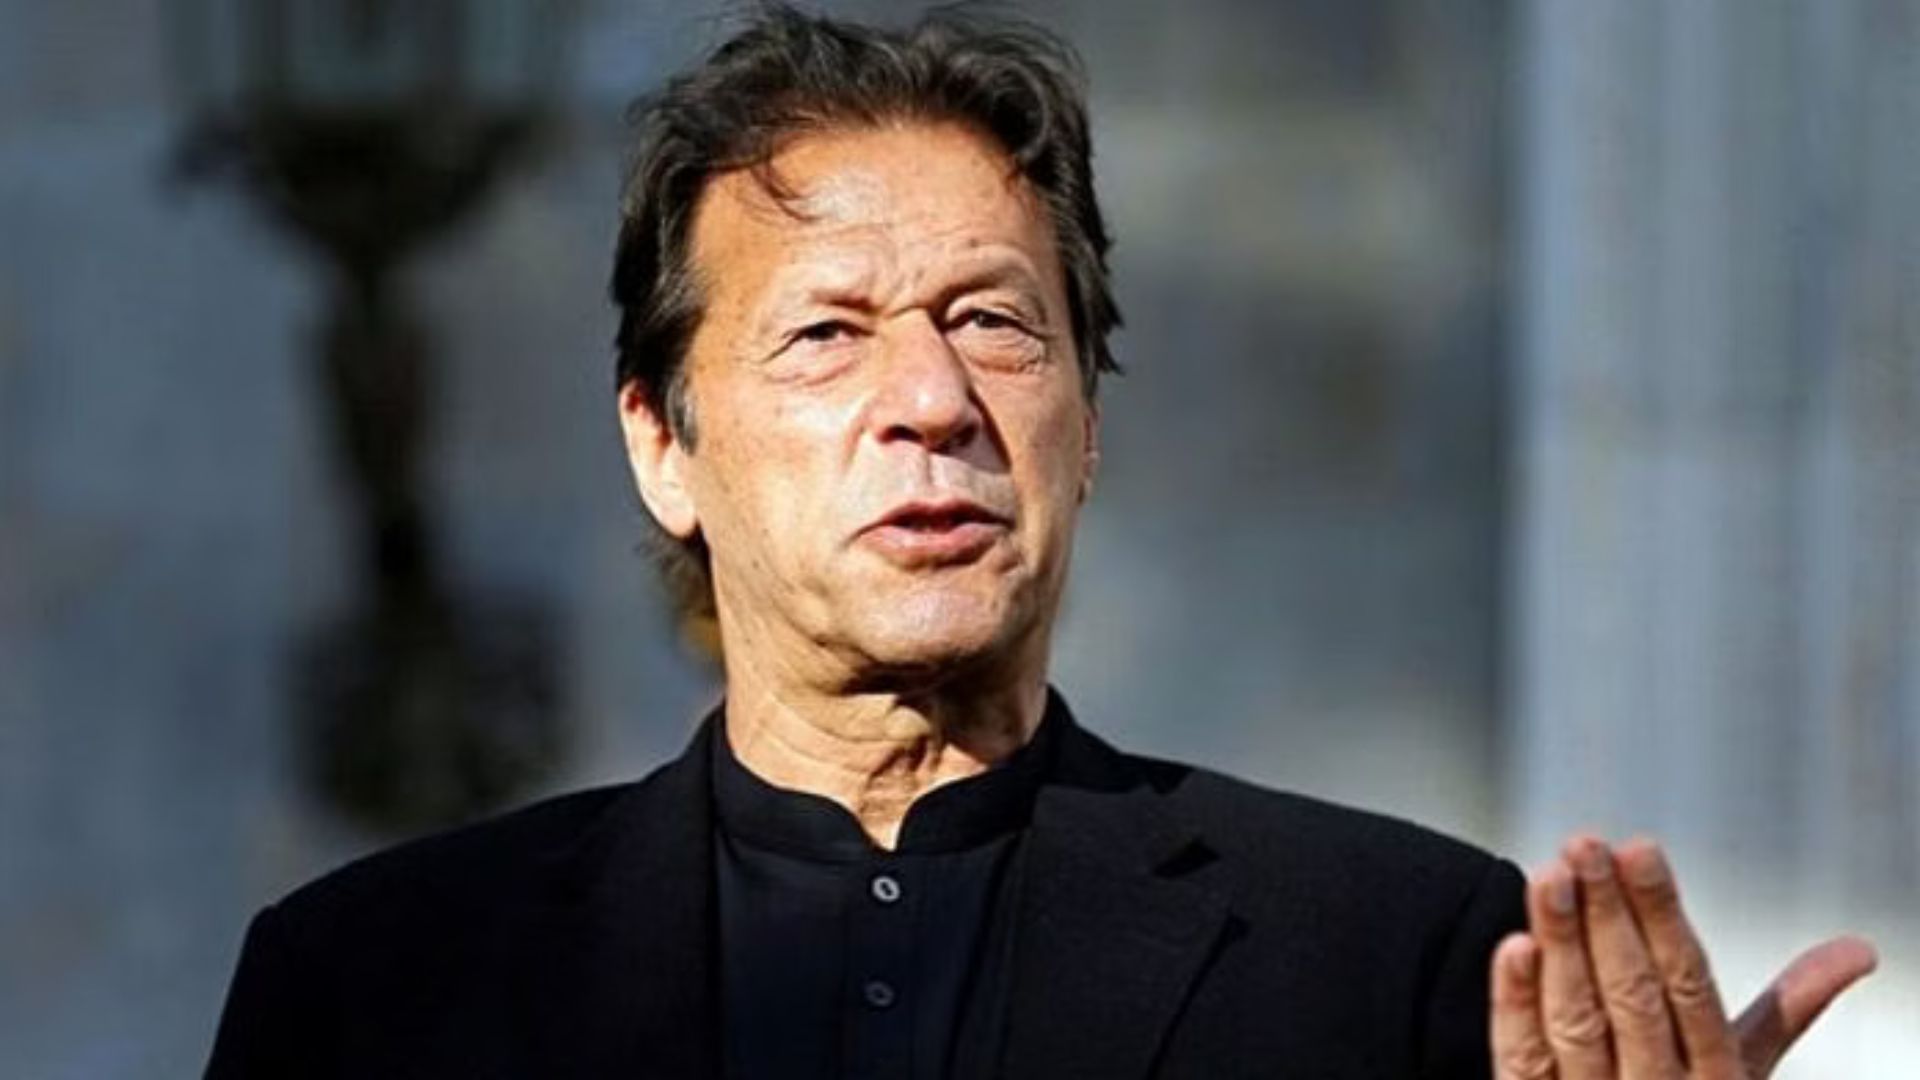 Imran Khan To Seek Oxford University Chancellor Post Despite Imprisonment